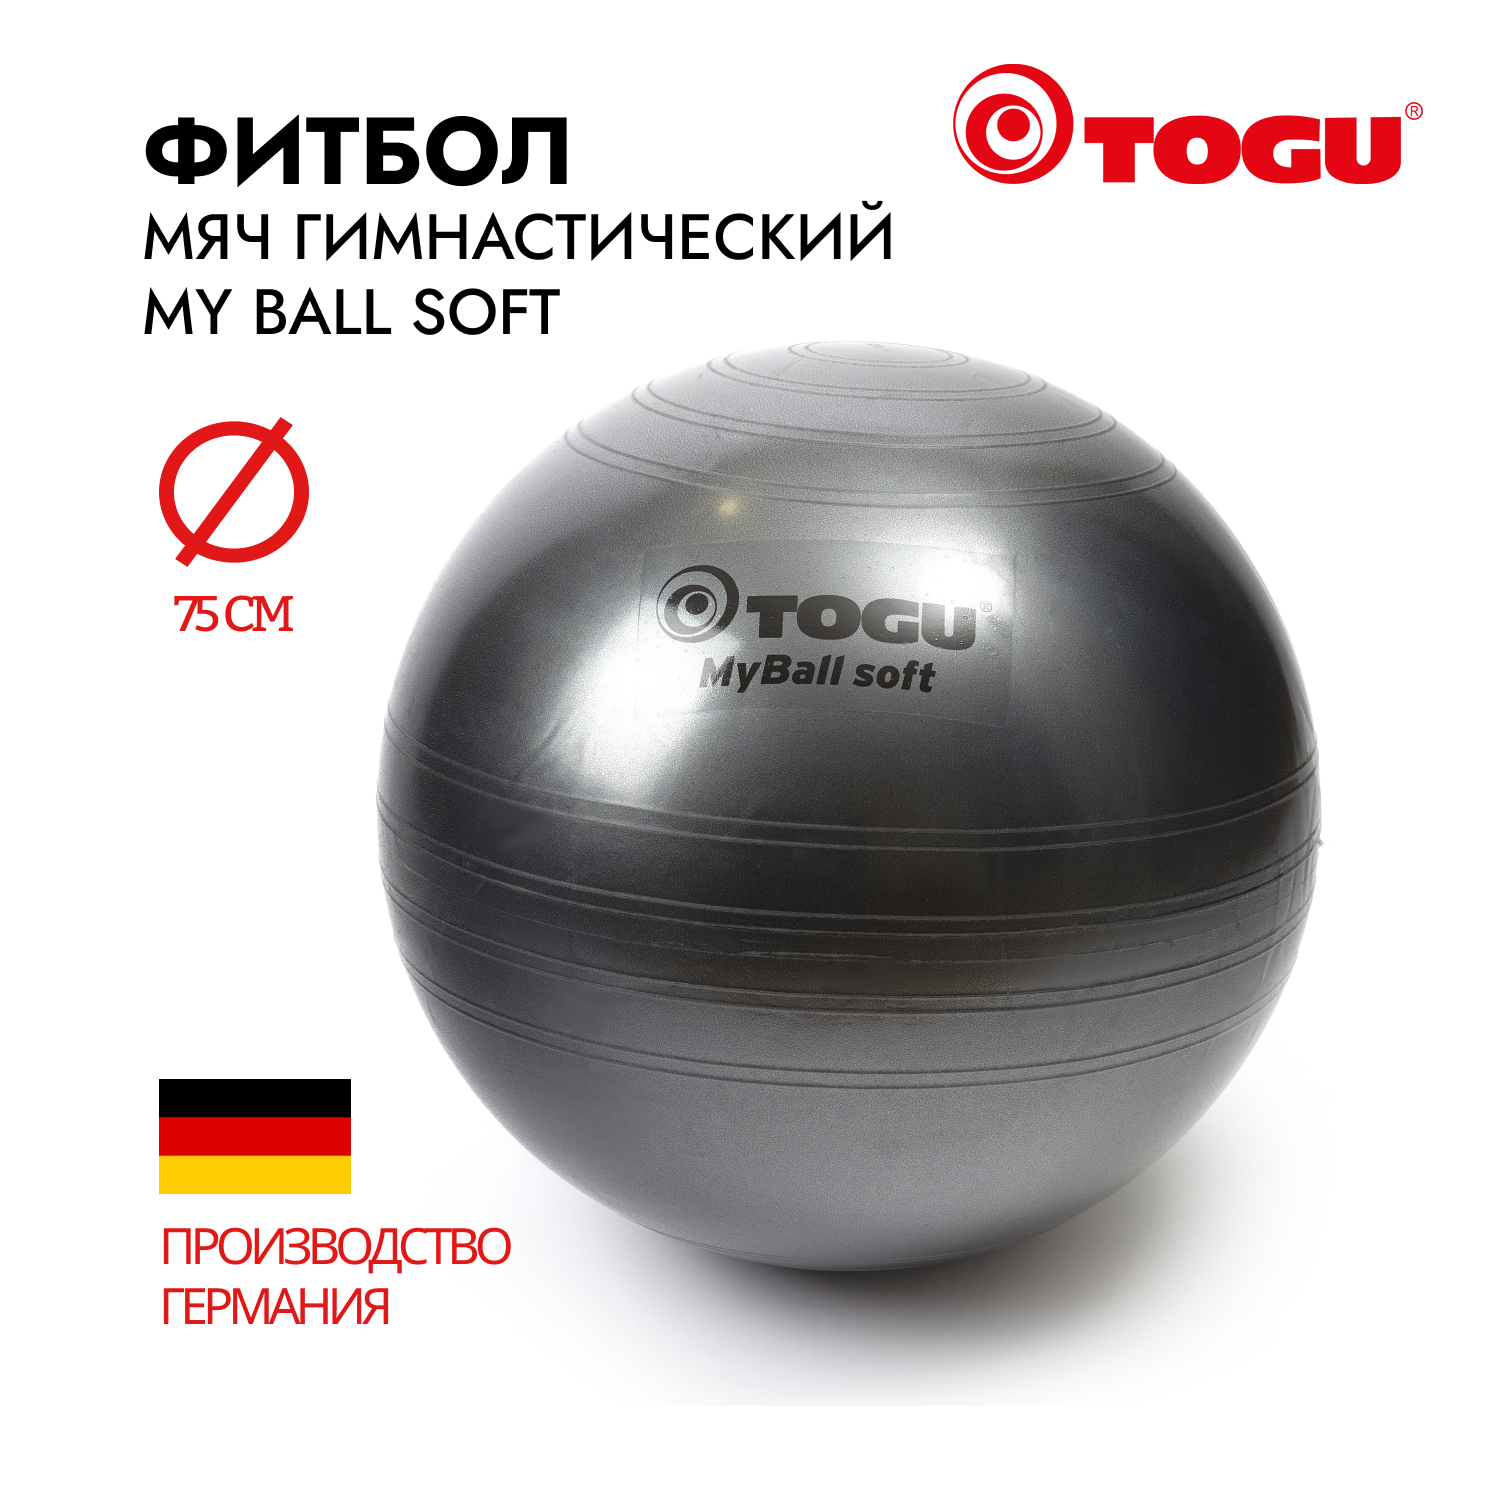 Мяч надувной спортивный/ Фитбол гимнастический TOGU My Ball Soft, диаметр 75 cм, черный перламутр